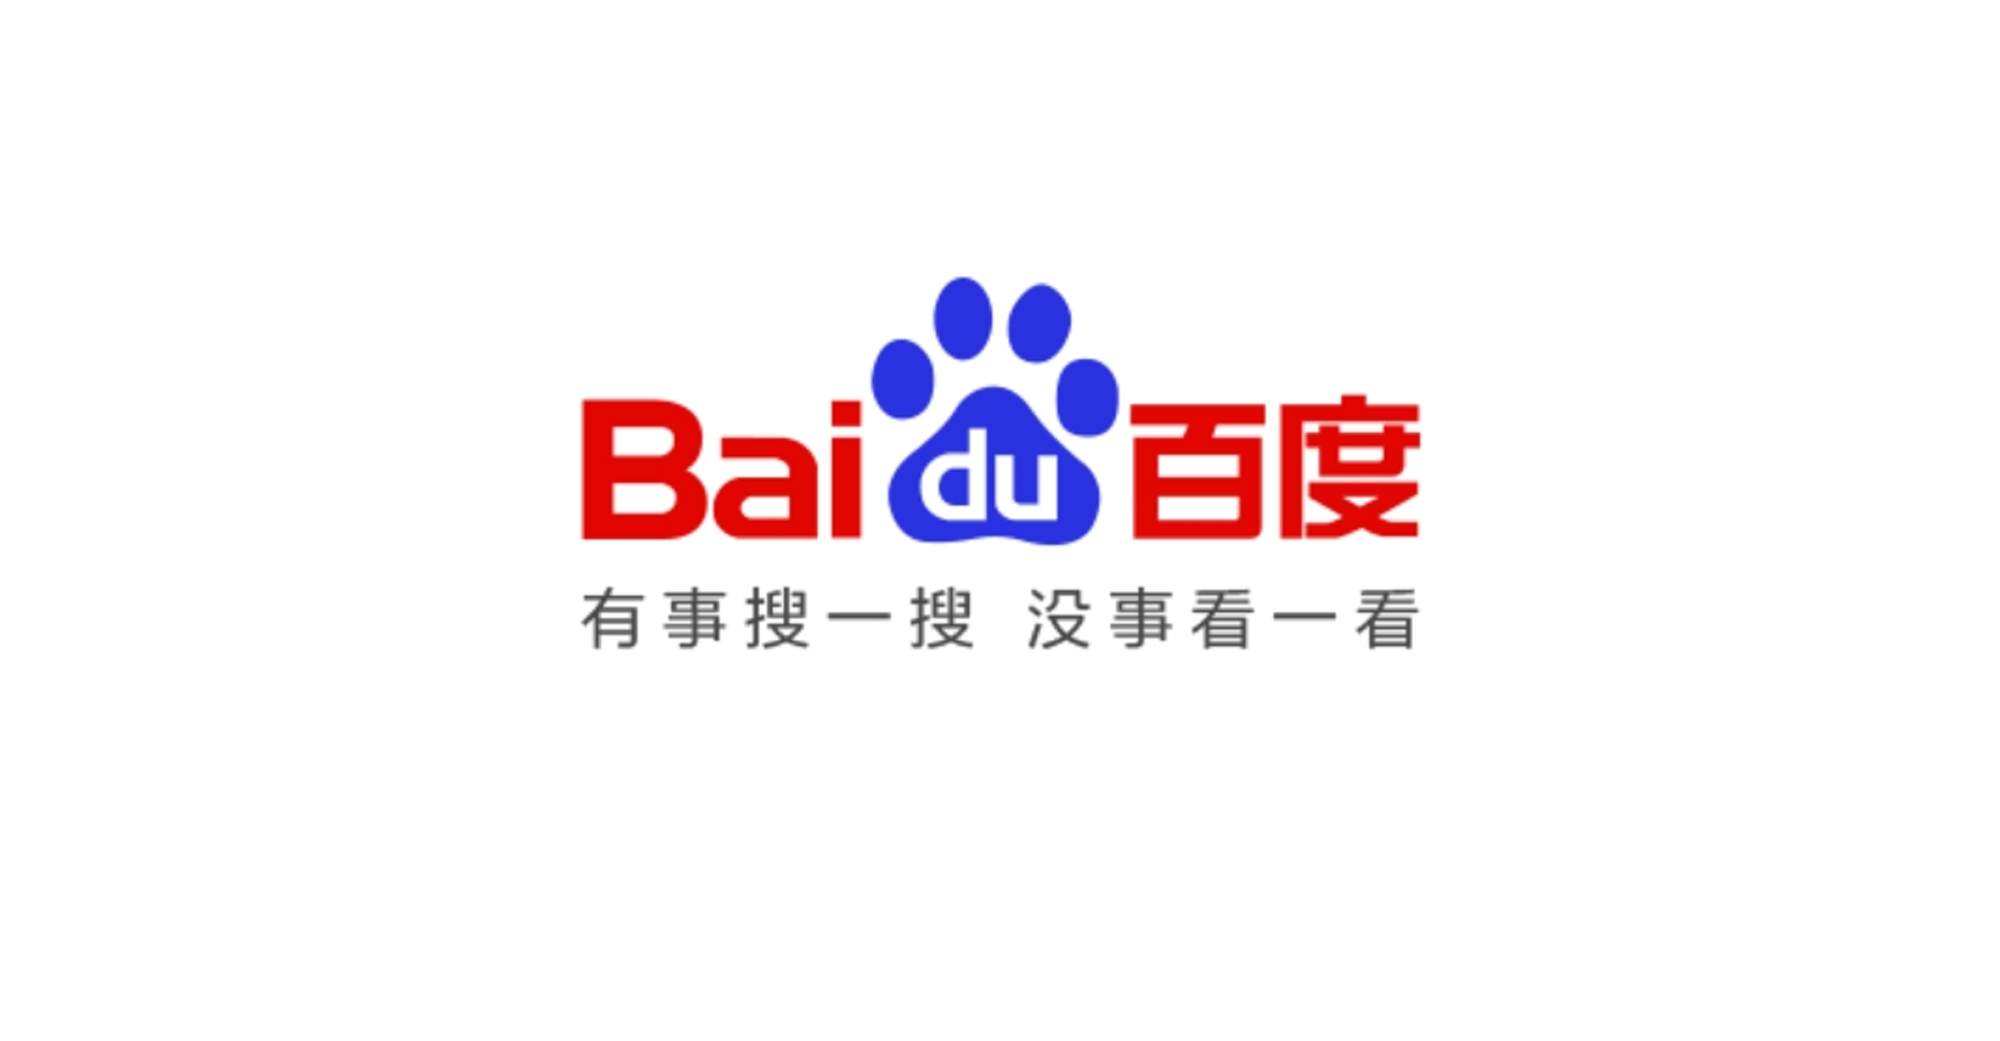 Baidu App Logo - Why the Baidu App Changed Its Slogan